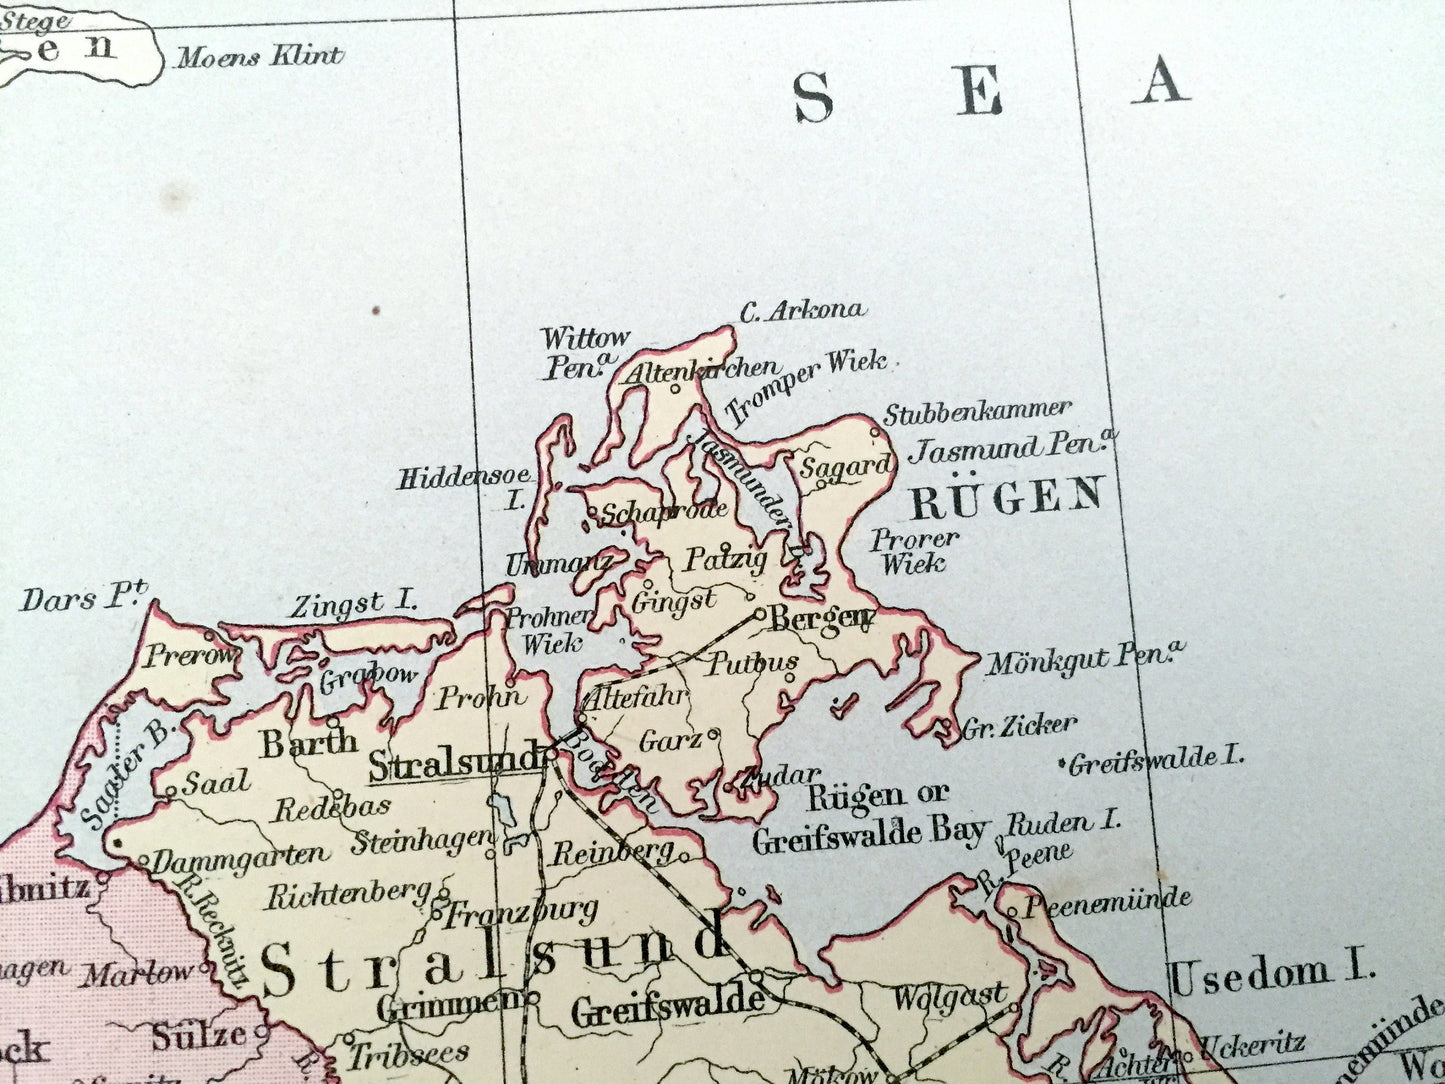 Antique 1888 German Empire Map from A & C Black's World Atlas – Germany, Czech Republic, France, Berlin, Munich, Stuttgart, Salzburg, Prague